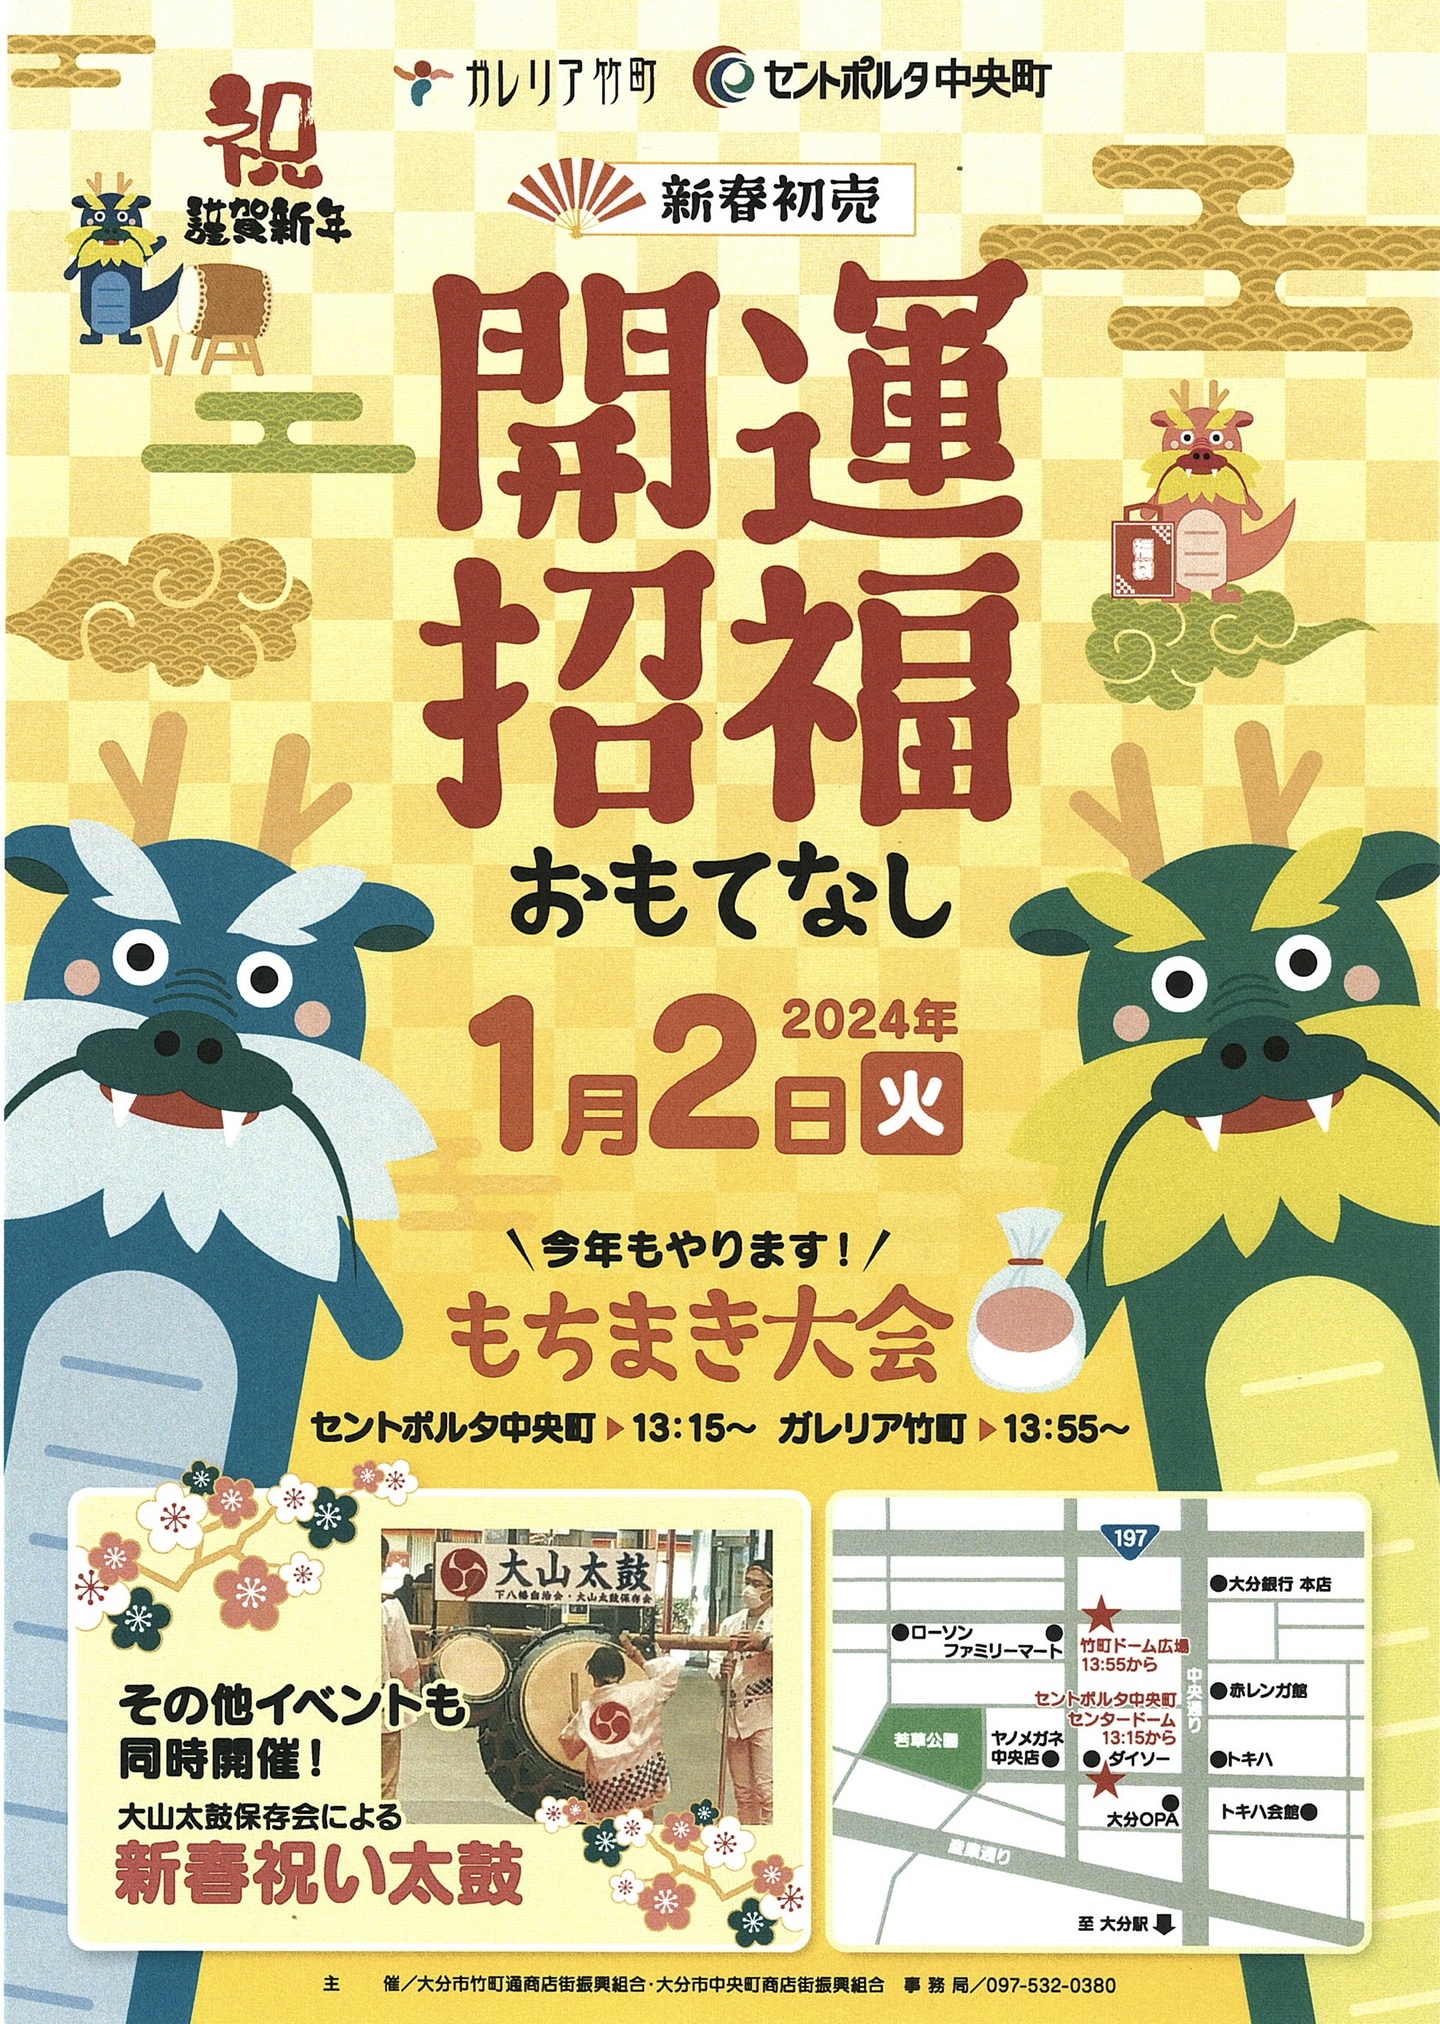 竹町餅まき大会は1月2日13時55分開始です。